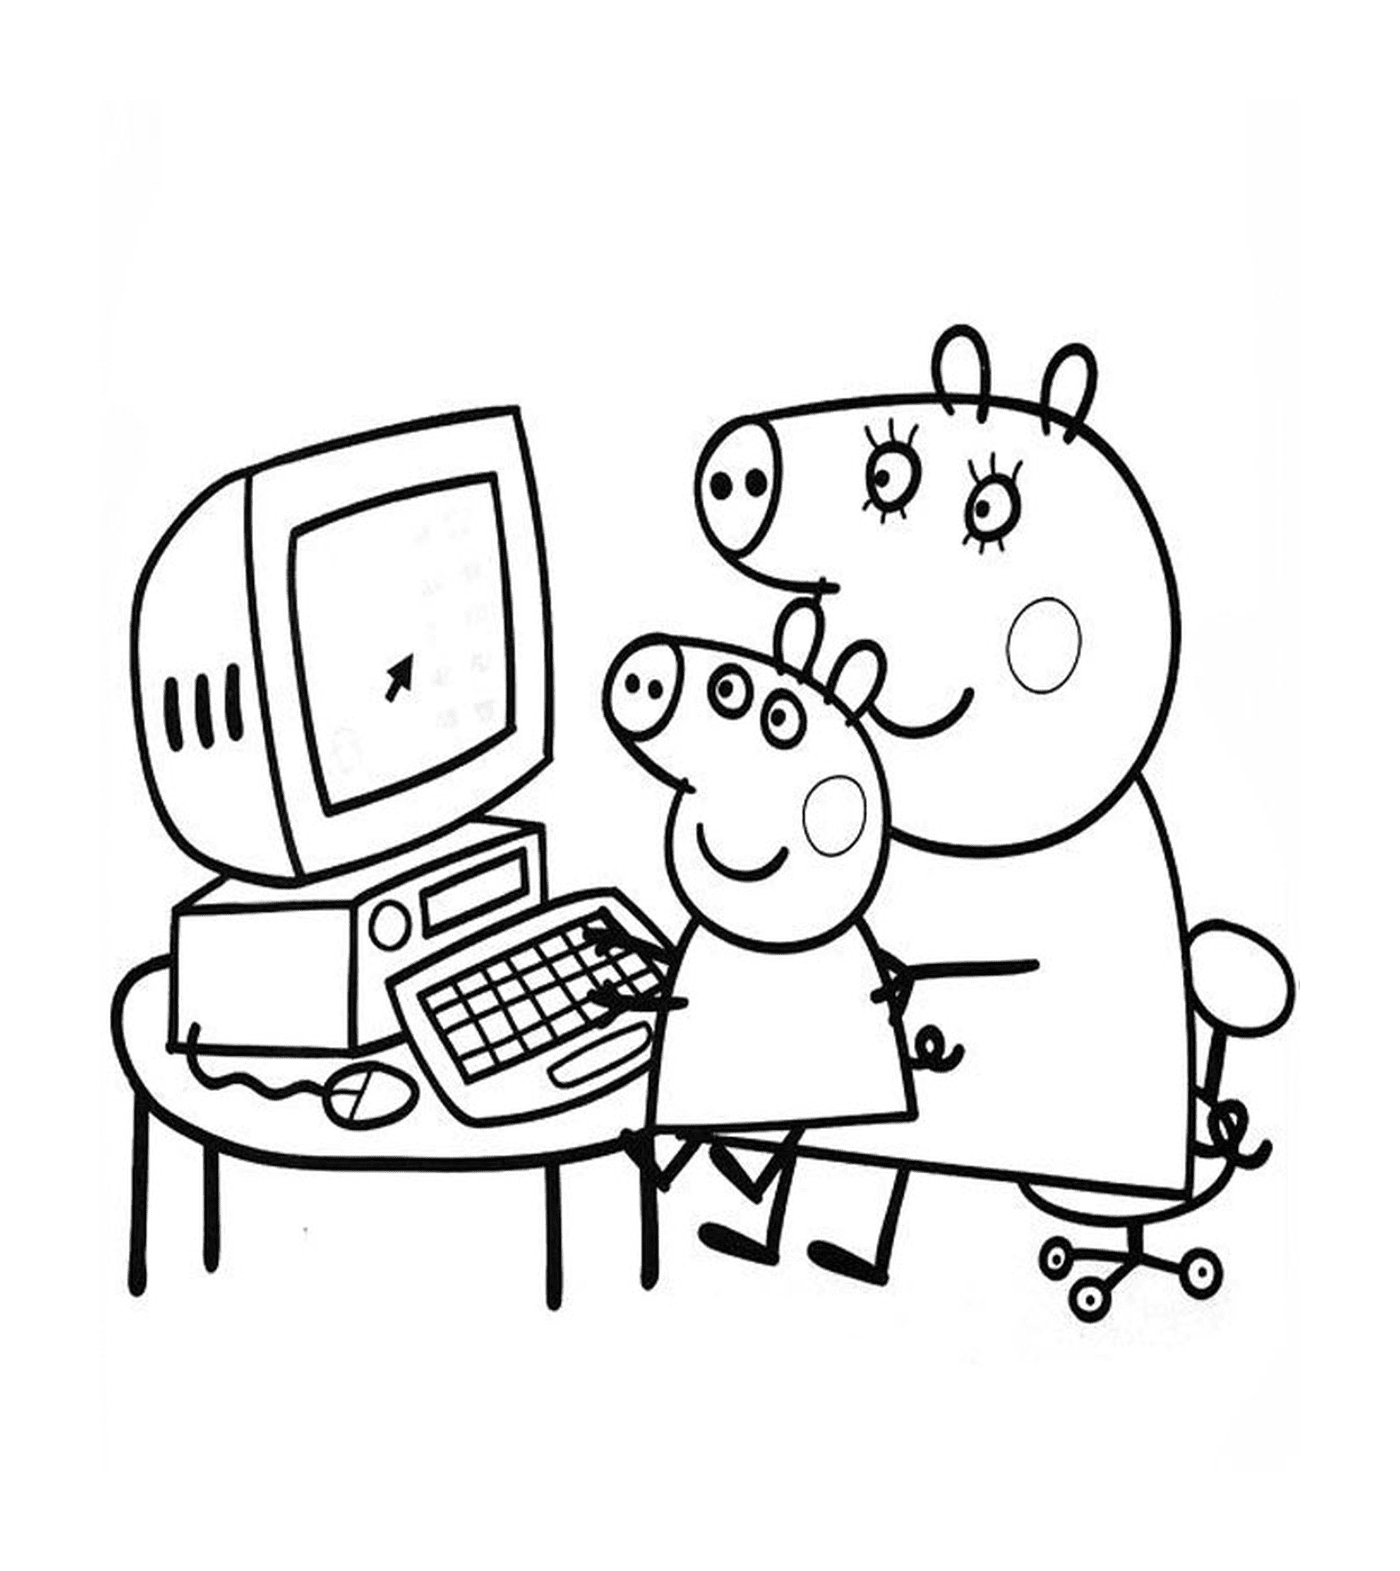  पेप्पो सूअर और उनके पिता कंप्यूटर पर 